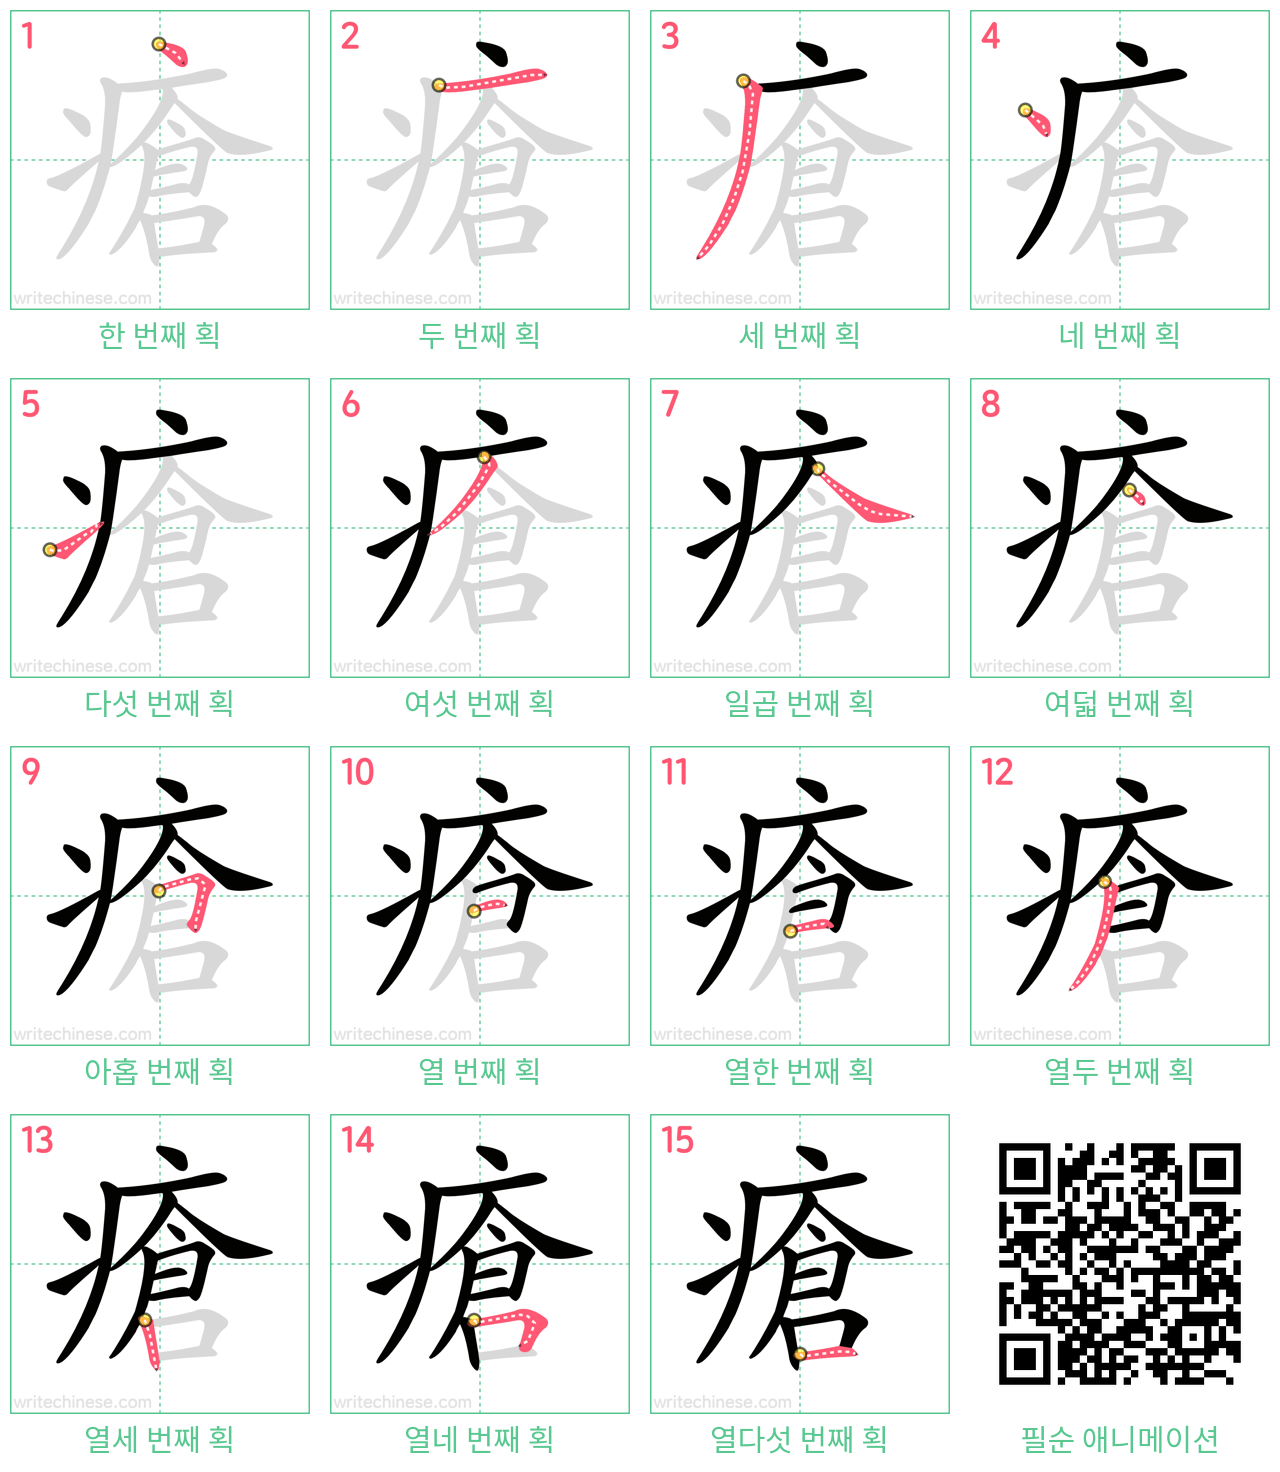 瘡 step-by-step stroke order diagrams